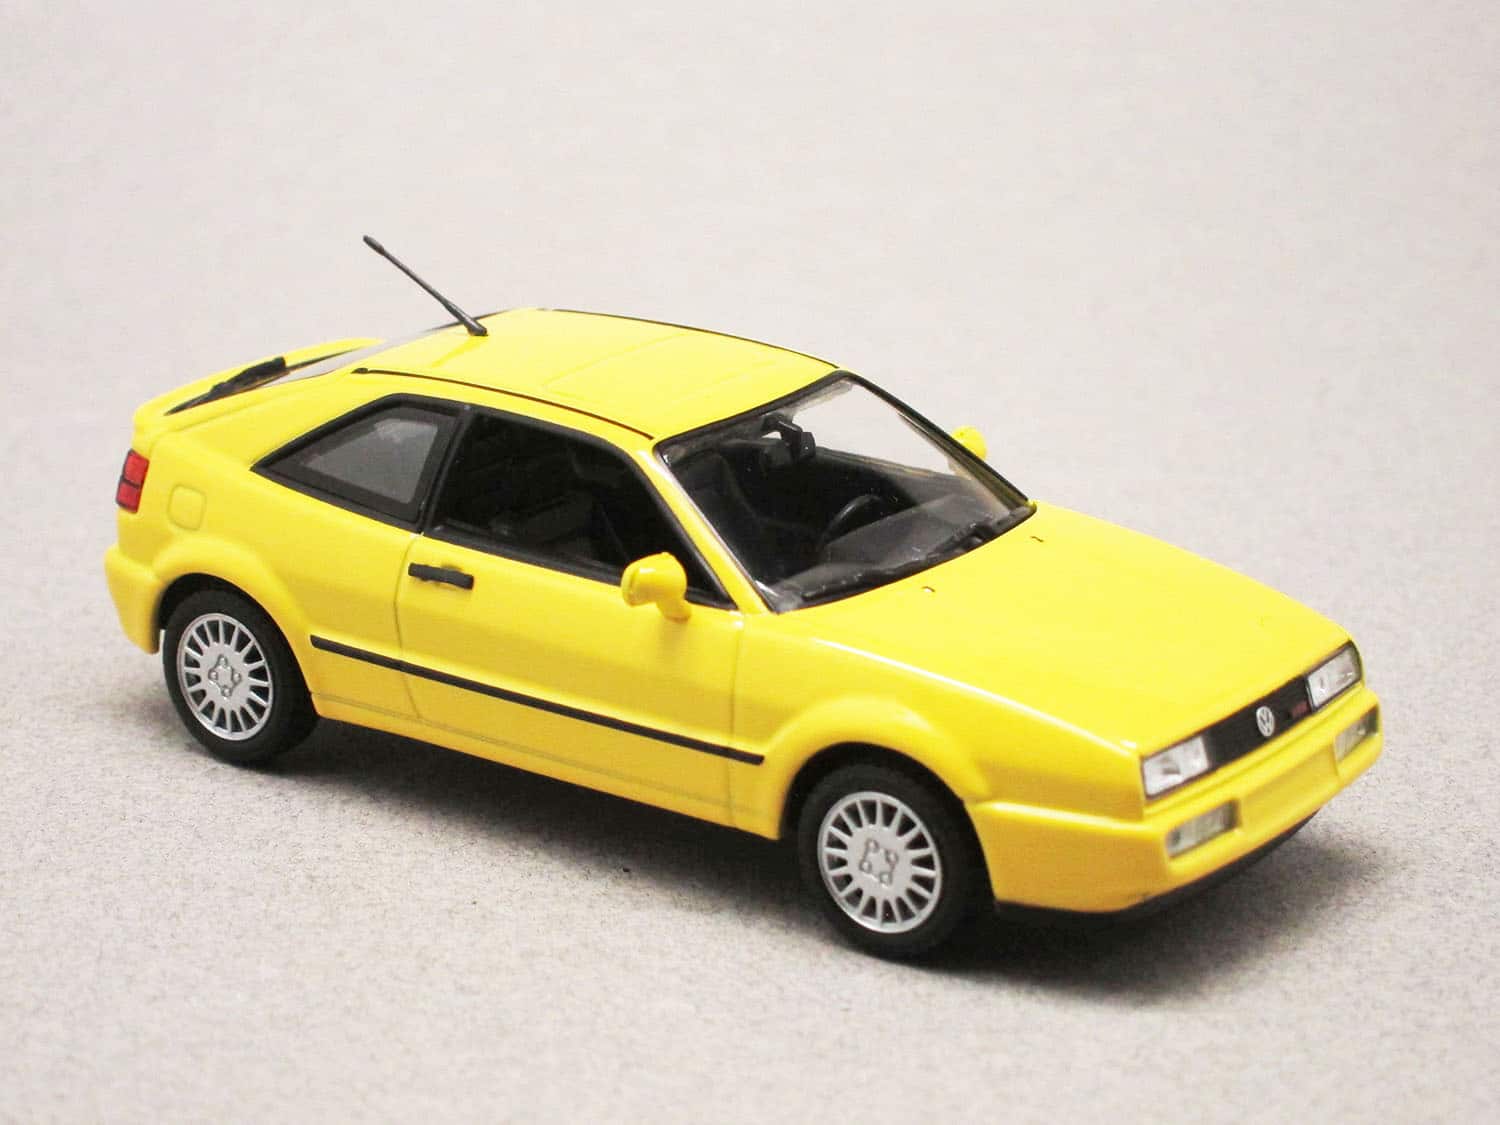 Volkswagen Corrado G60 jaune (Maxichamps) 1/43e